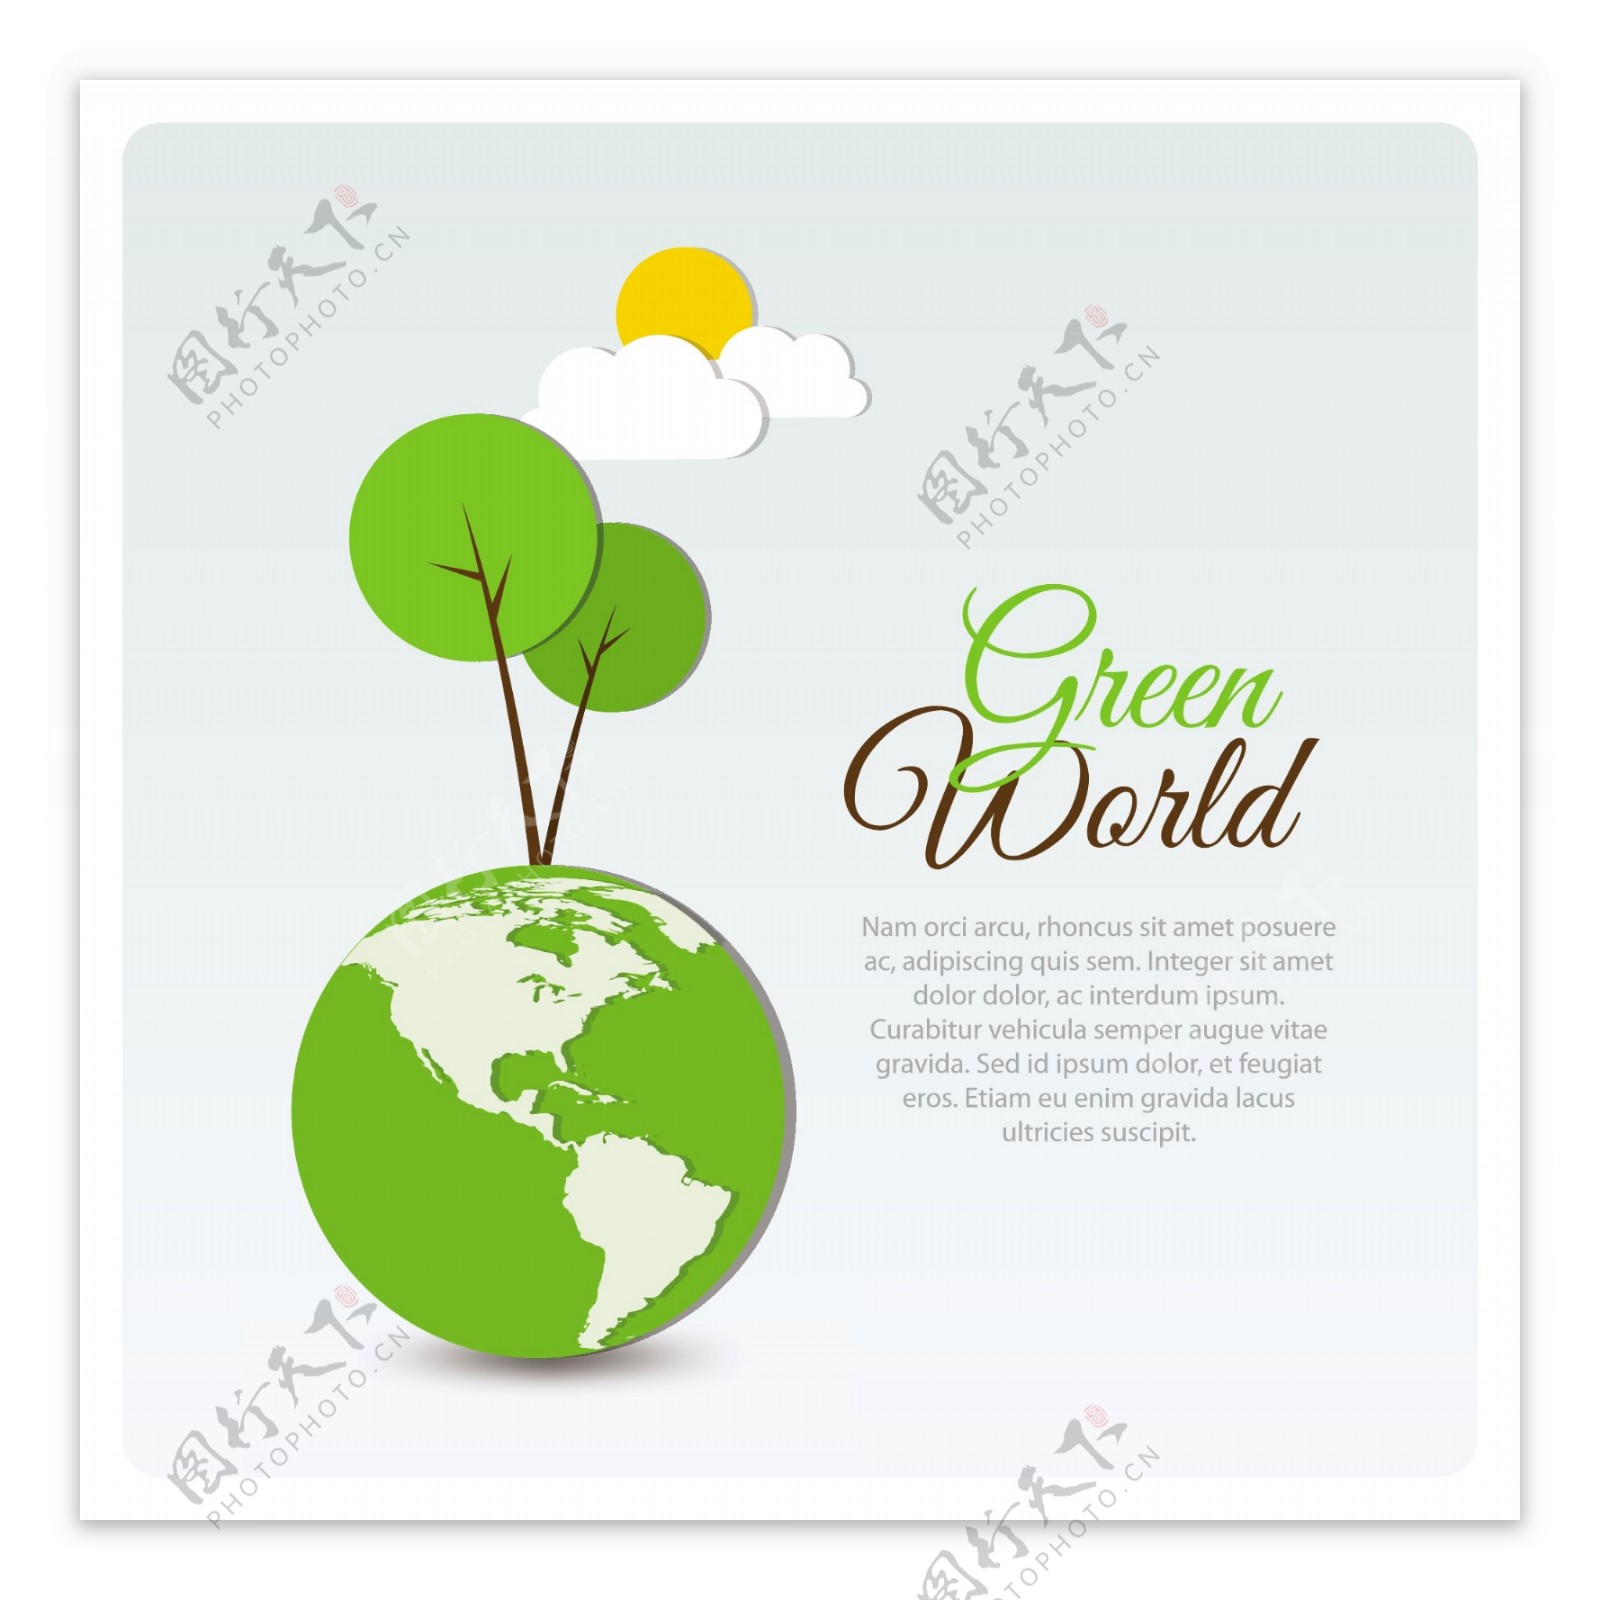 绿色世界的图形矢量素材